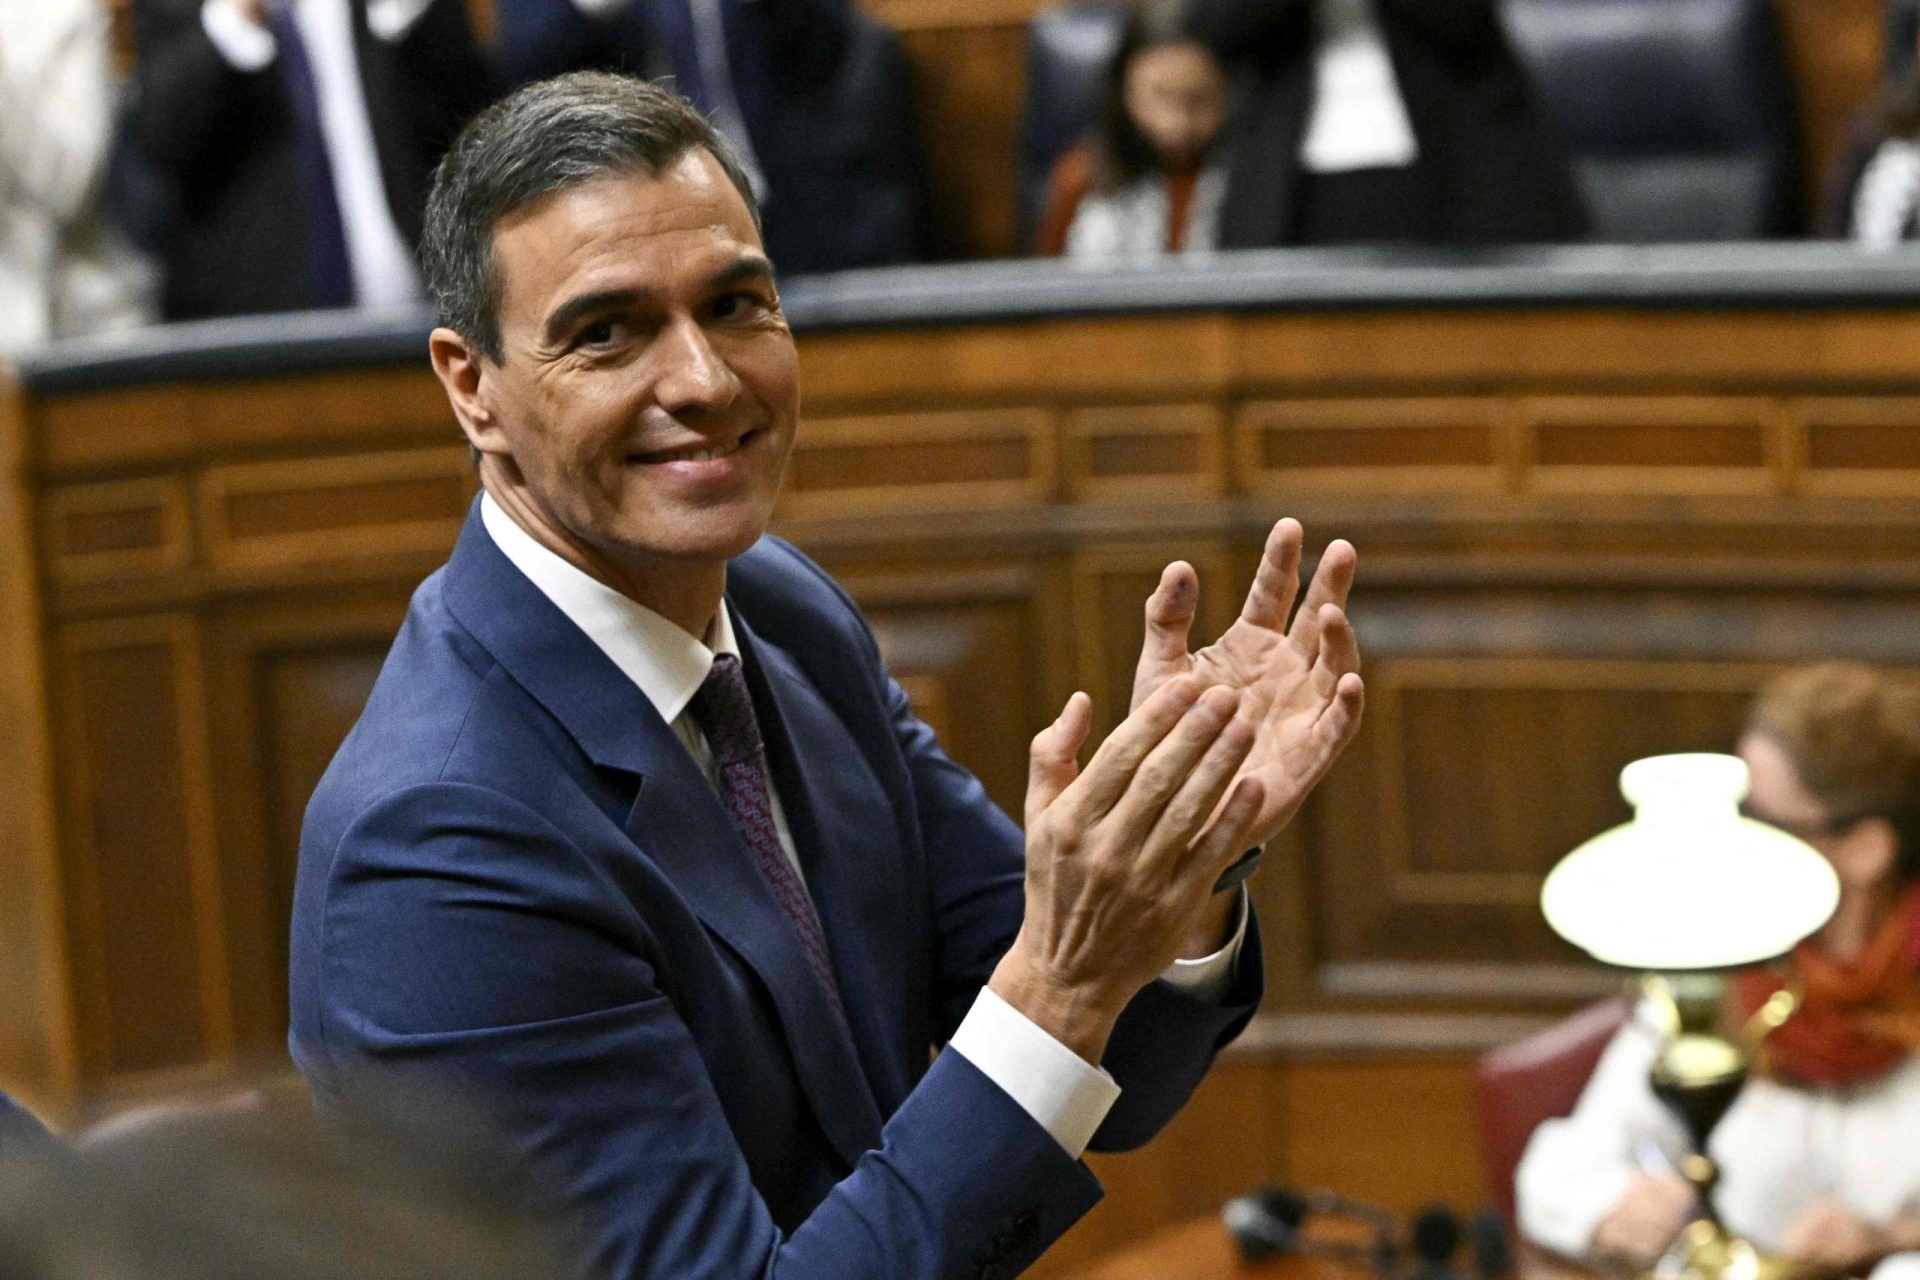 Espanha. Sánchez reeleito chefe do Governo espanhol com 179 votos a favor